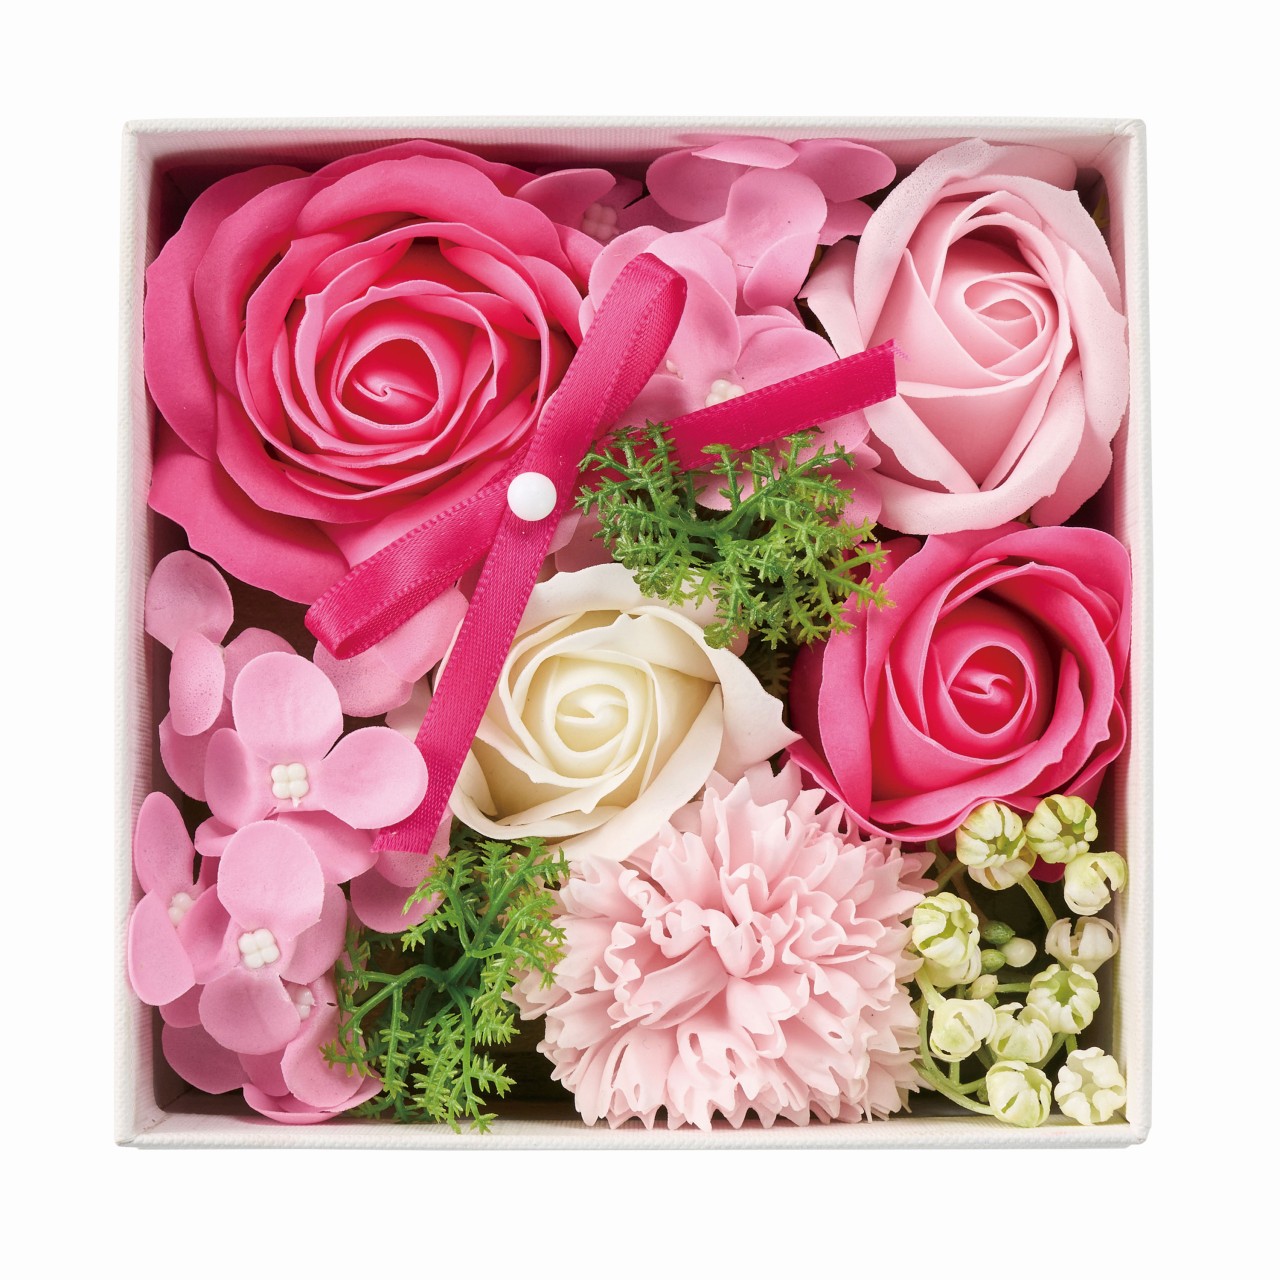 マイフラ】 通販/東京堂オリジナル ソープフラワー ビジューホワイトボックス ピンク アレンジメント ギフトアレンジ  MM000002-00P(ピンク): フラワーアレンジメント（キット・ギフト）/全国にMAGIQ、花器、花資材などをお届けします。